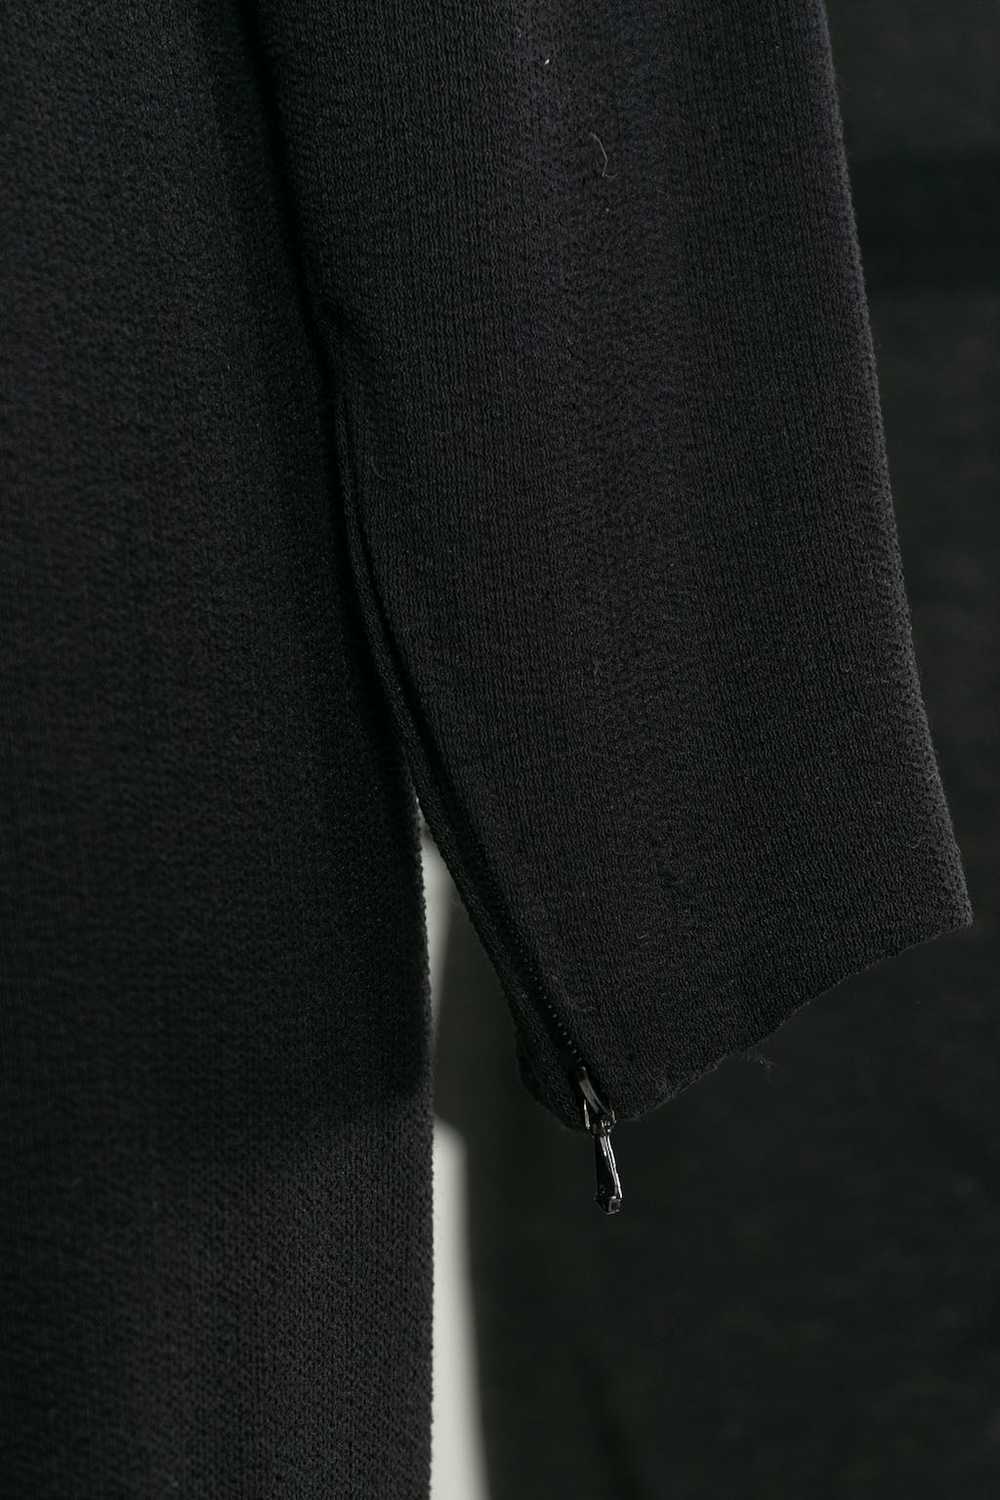 Yves saint Laurent Haute Couture black dress - image 8